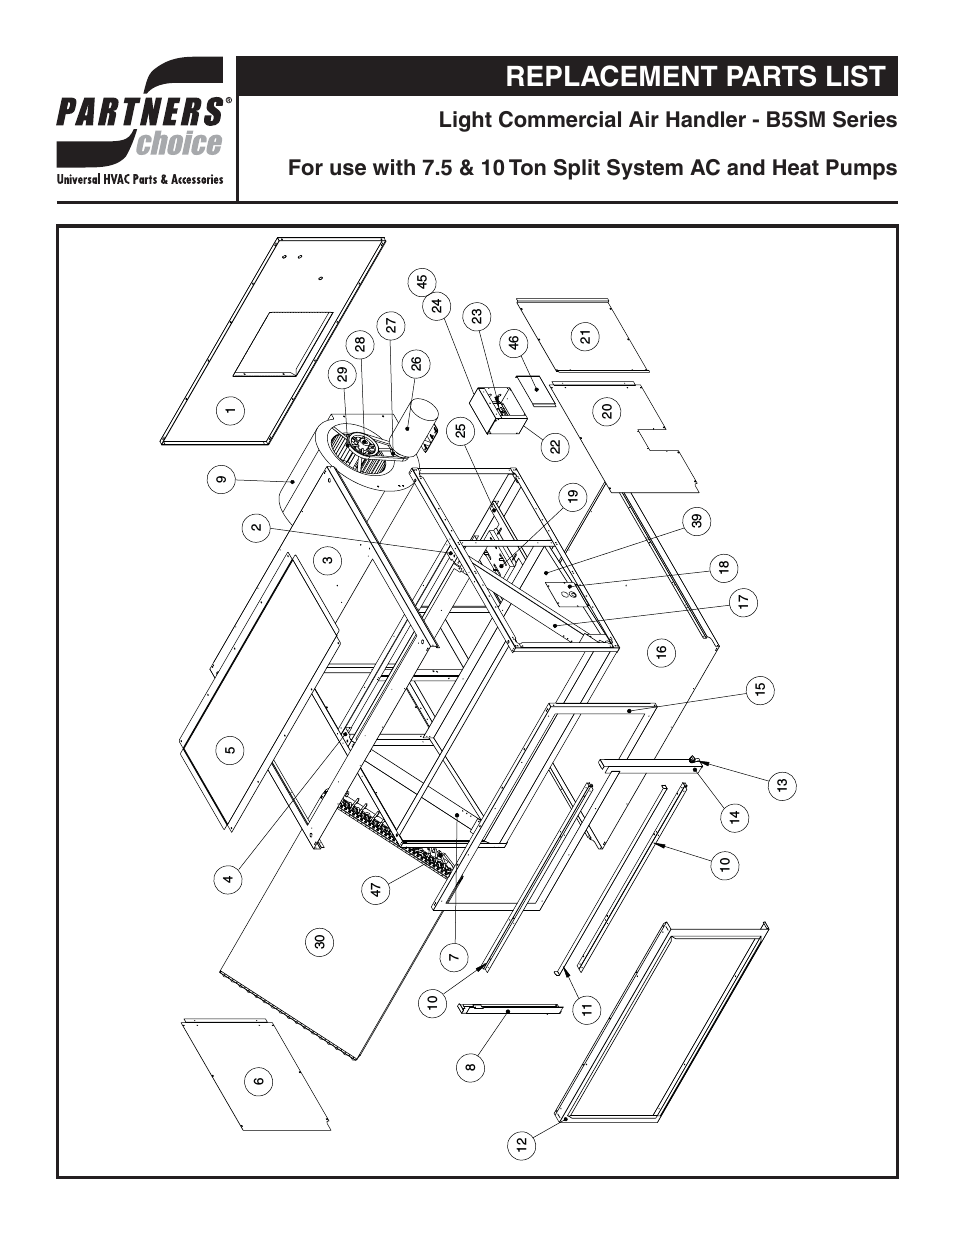 B5SM Parts Manuals